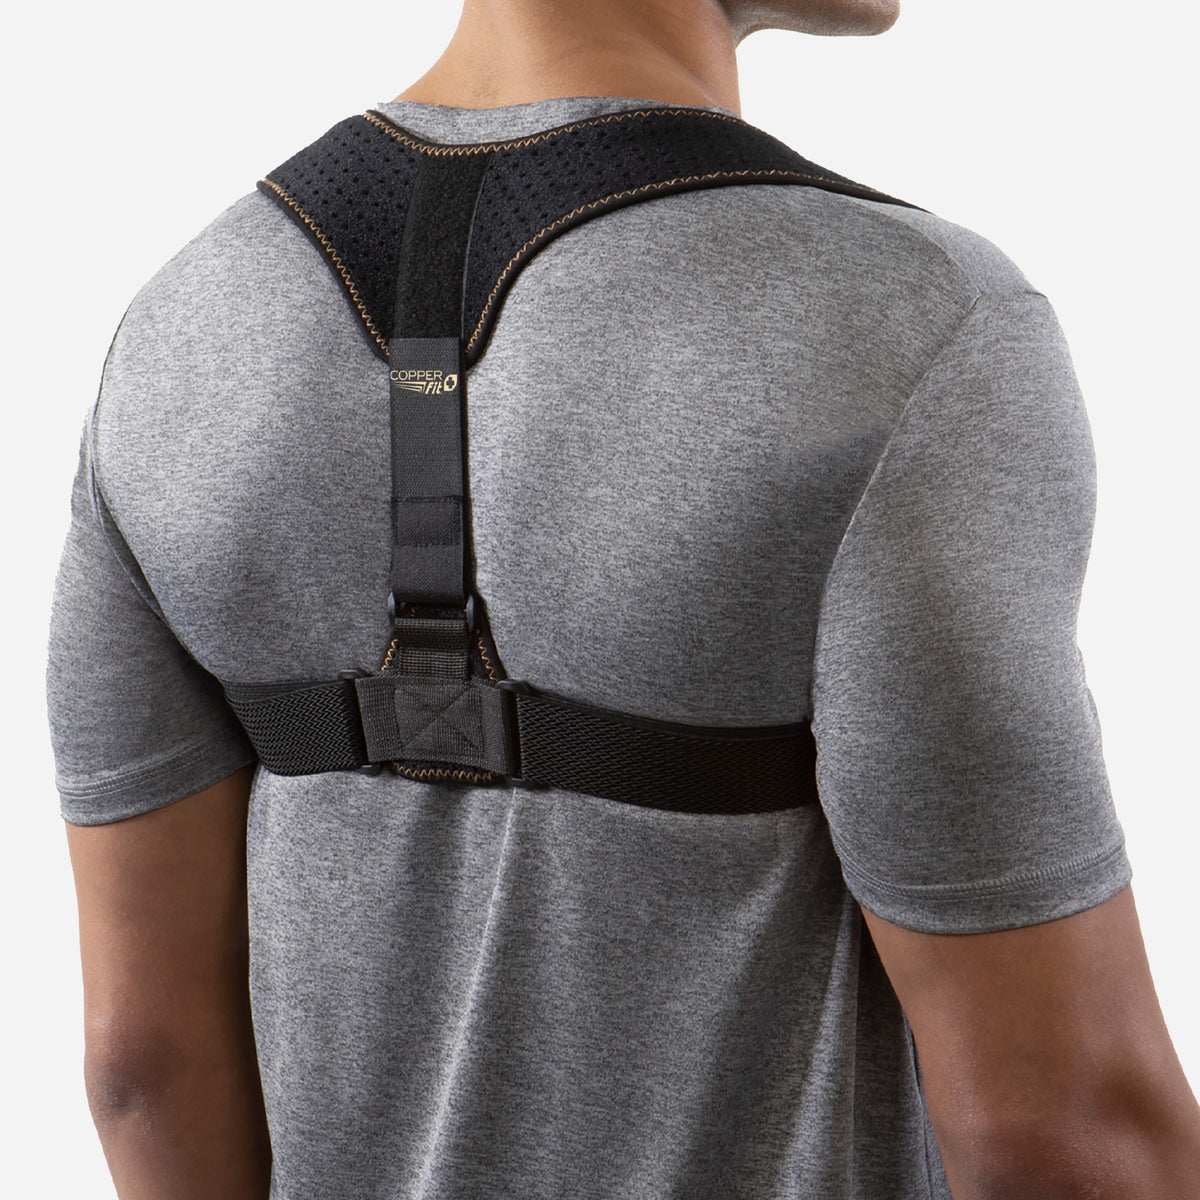 Medical Back Posture Corrector Shoulder Upper Neck Support Brace